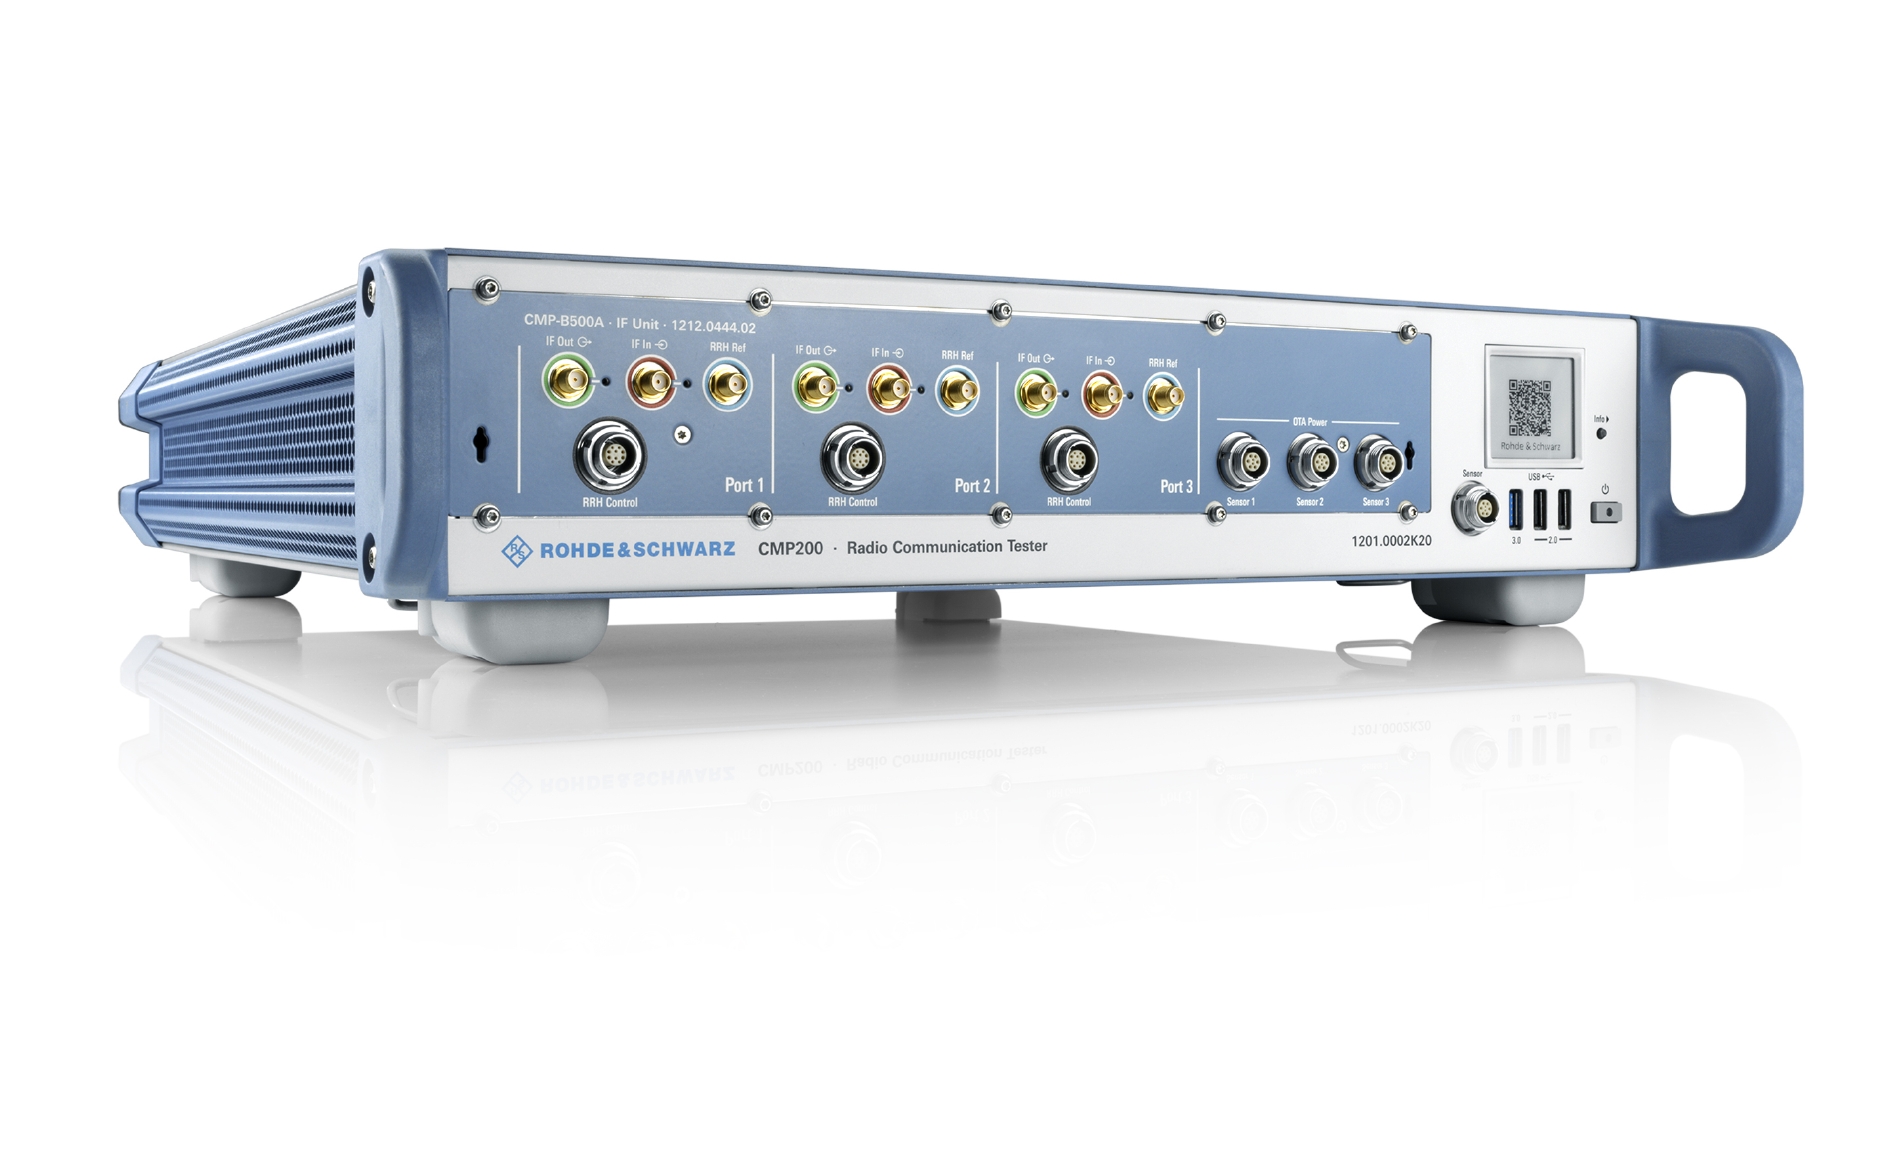 O Grupo Bosch escolheu o testador de comunicação de rádio R&S CMP200 da Rohde & Schwarz para validar as aplicações automotivas de banda ultralarga